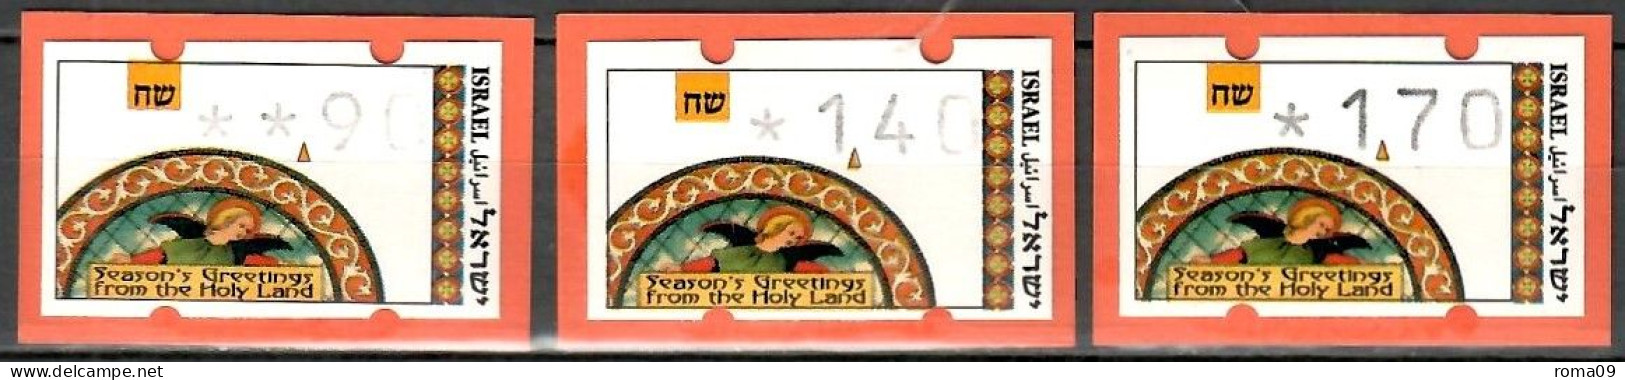 Israel, ATM (Klüssendorf); MiNr. 3; 0,90/1,40/1,70; Postfrisch, Automaten Nr. 023; A-2696 - Franking Labels